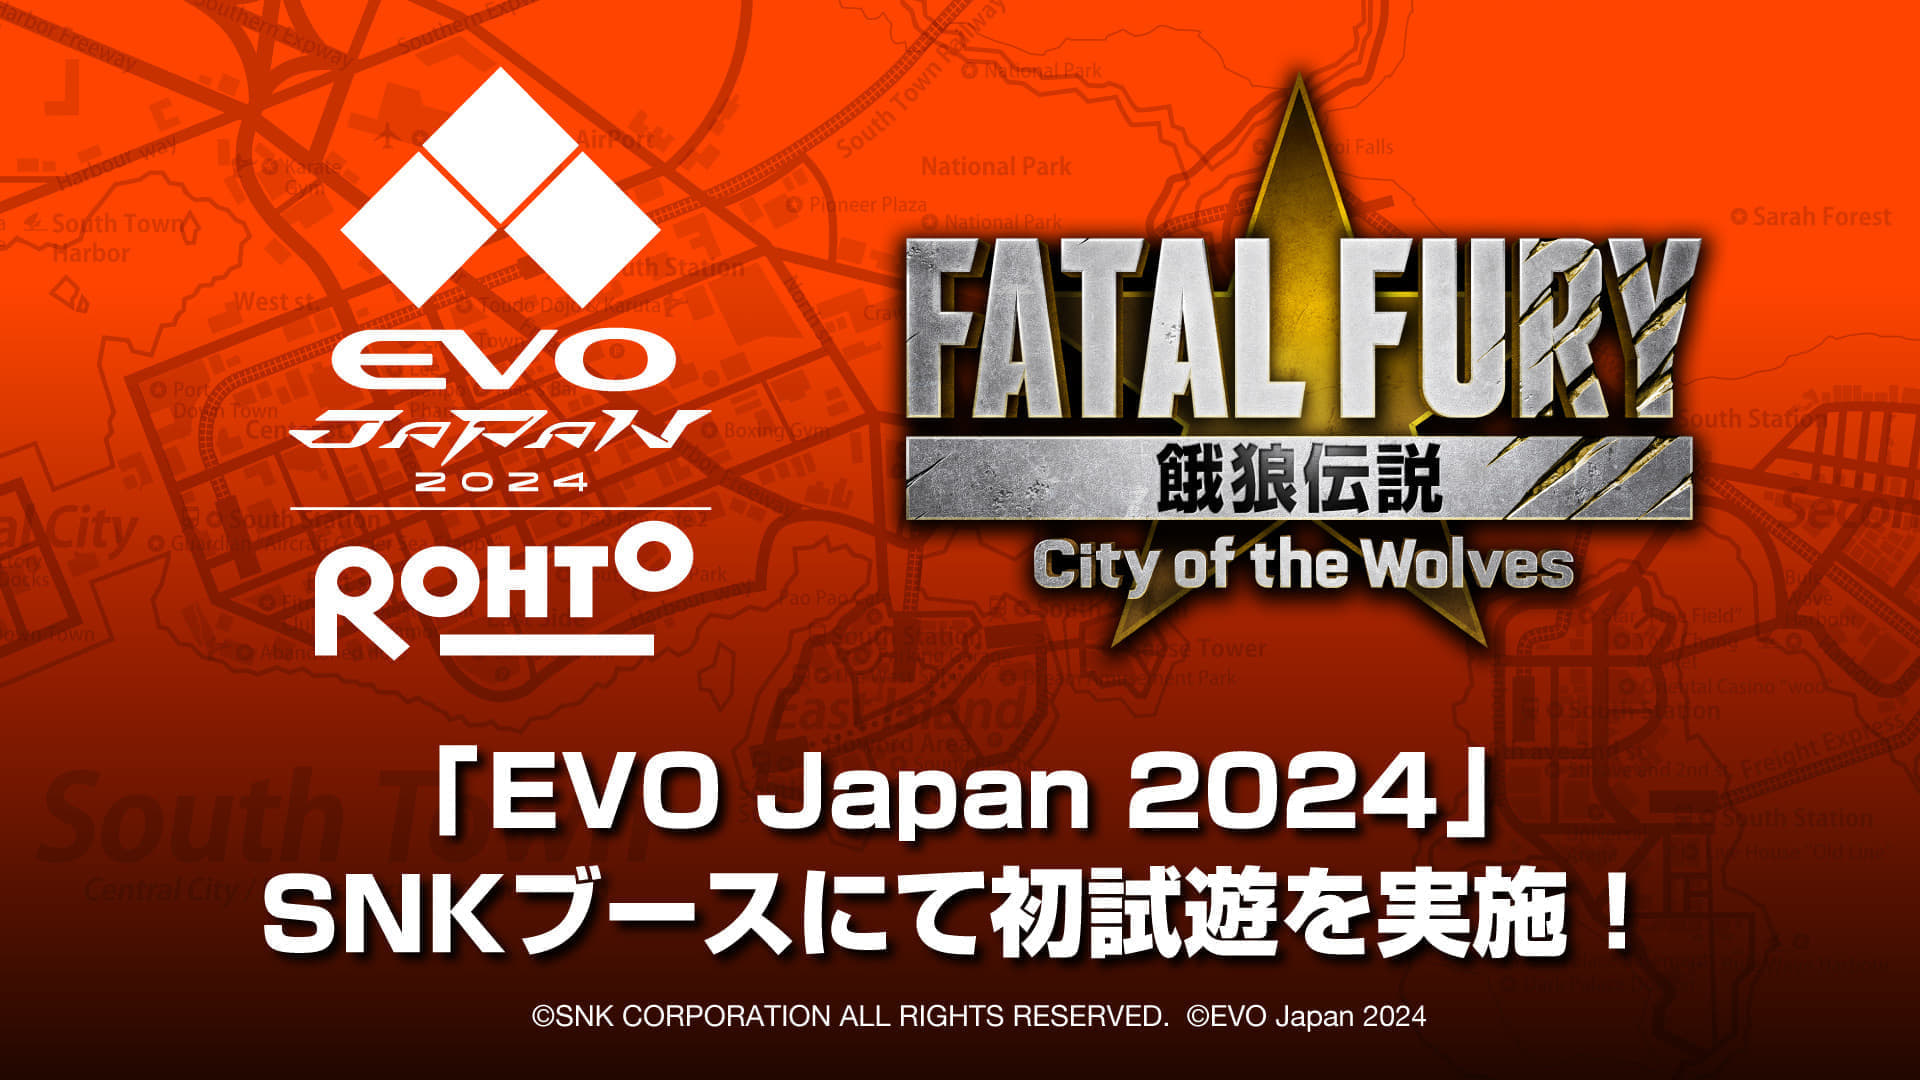 『餓狼伝説 City of the Wolves』初の試遊がEVO Japanにて開催決定_001